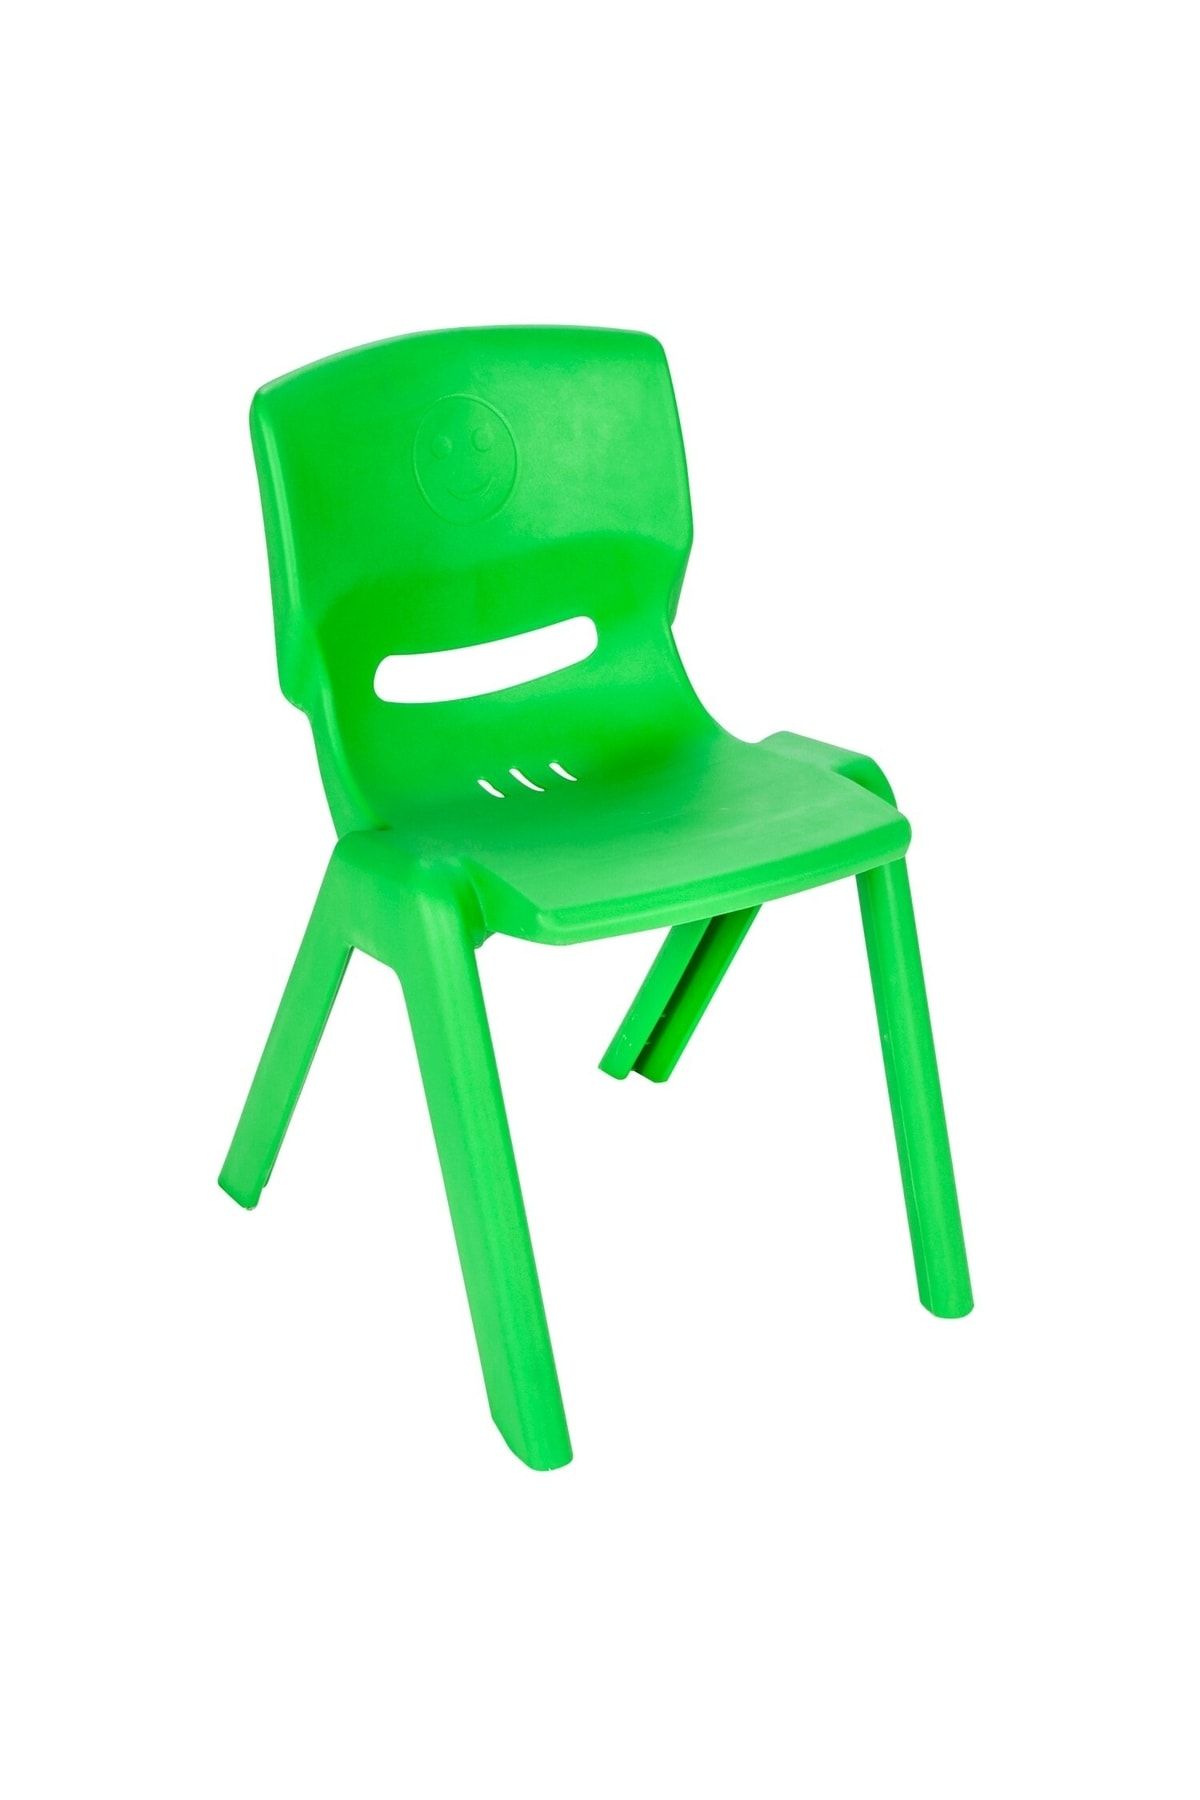 PİLSAN Nessiworld Happy Sandalye Yeşil